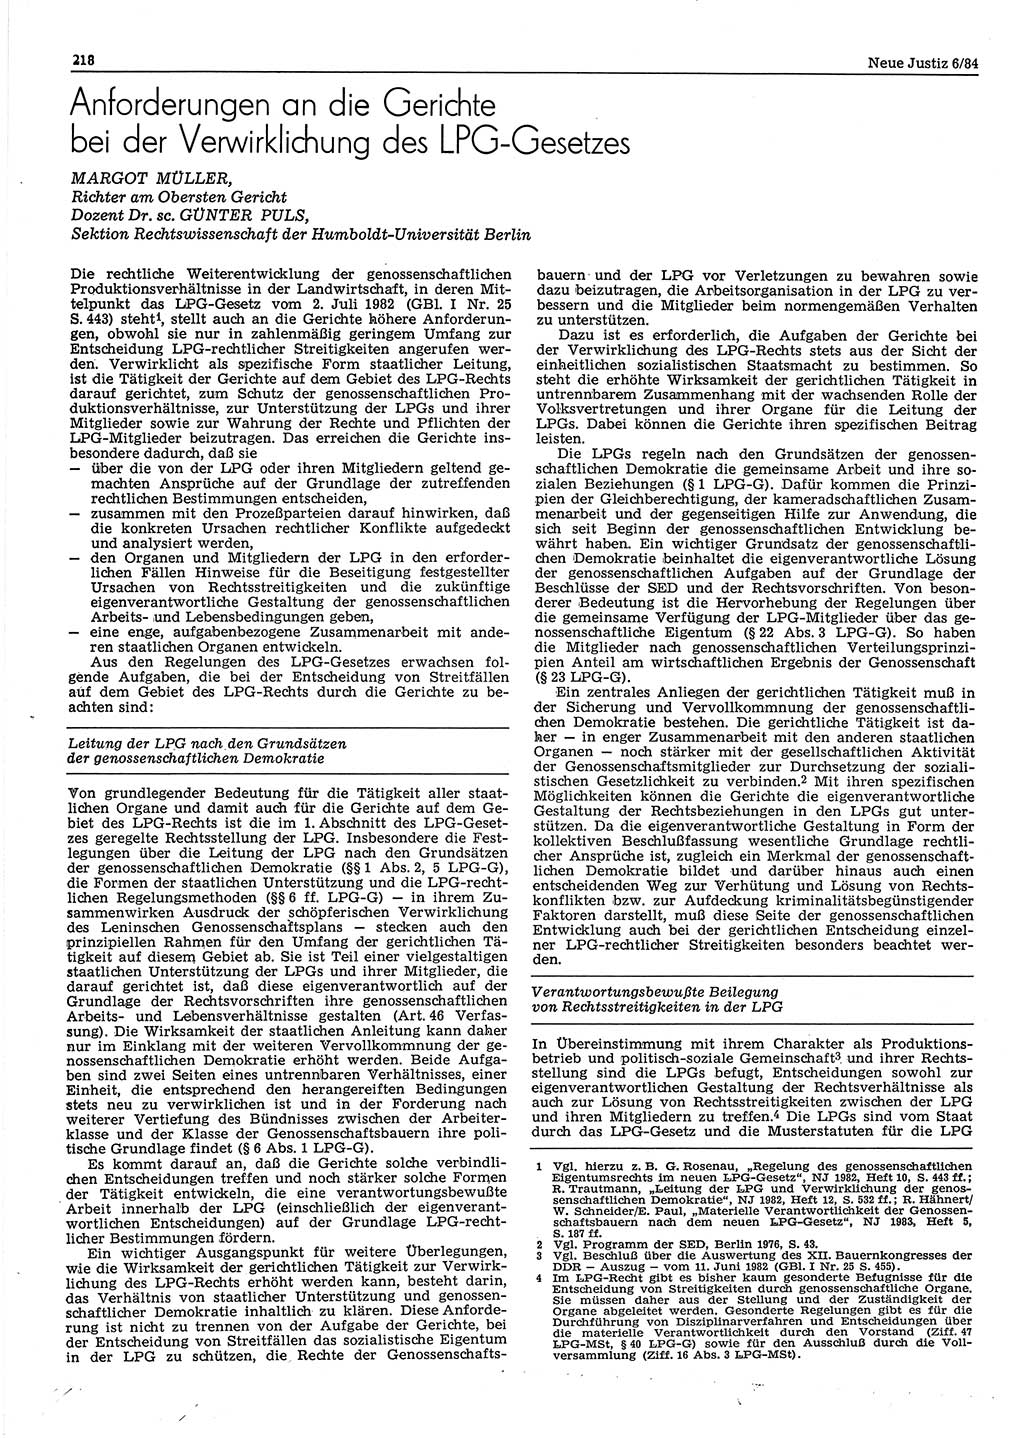 Neue Justiz (NJ), Zeitschrift für sozialistisches Recht und Gesetzlichkeit [Deutsche Demokratische Republik (DDR)], 38. Jahrgang 1984, Seite 218 (NJ DDR 1984, S. 218)